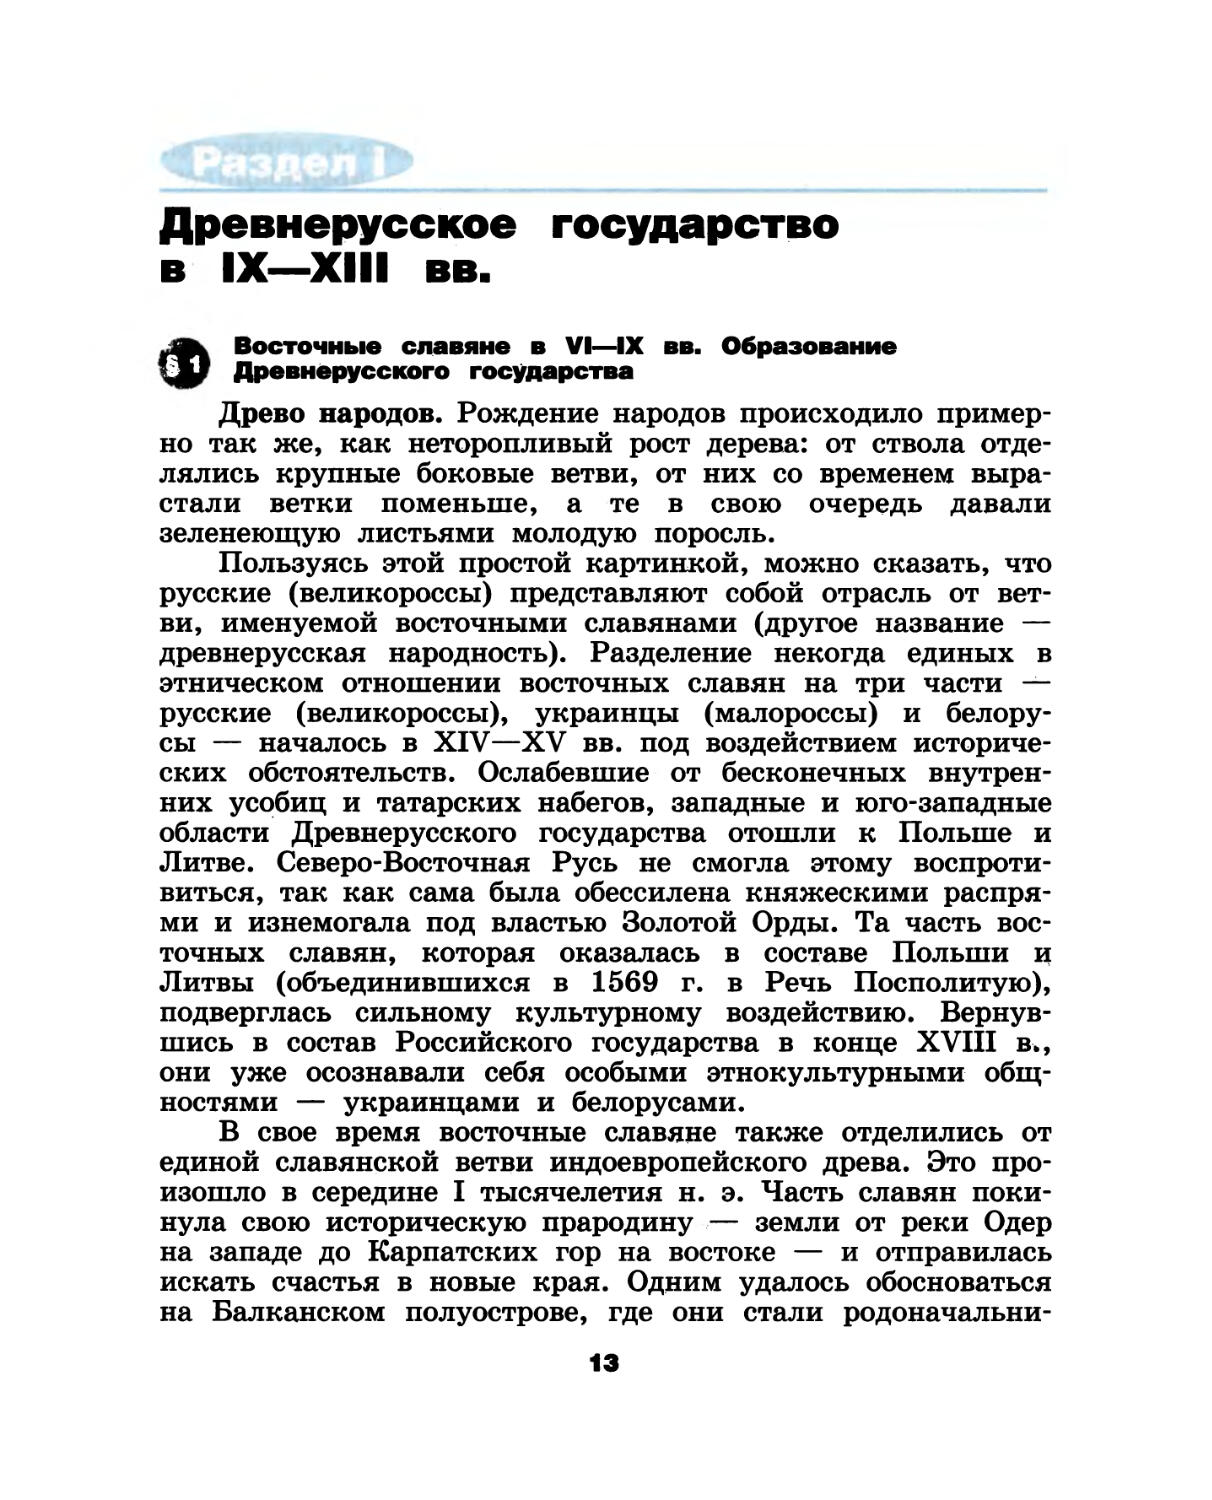 Раздел I. Древнерусское государство в IX—XIII вв.